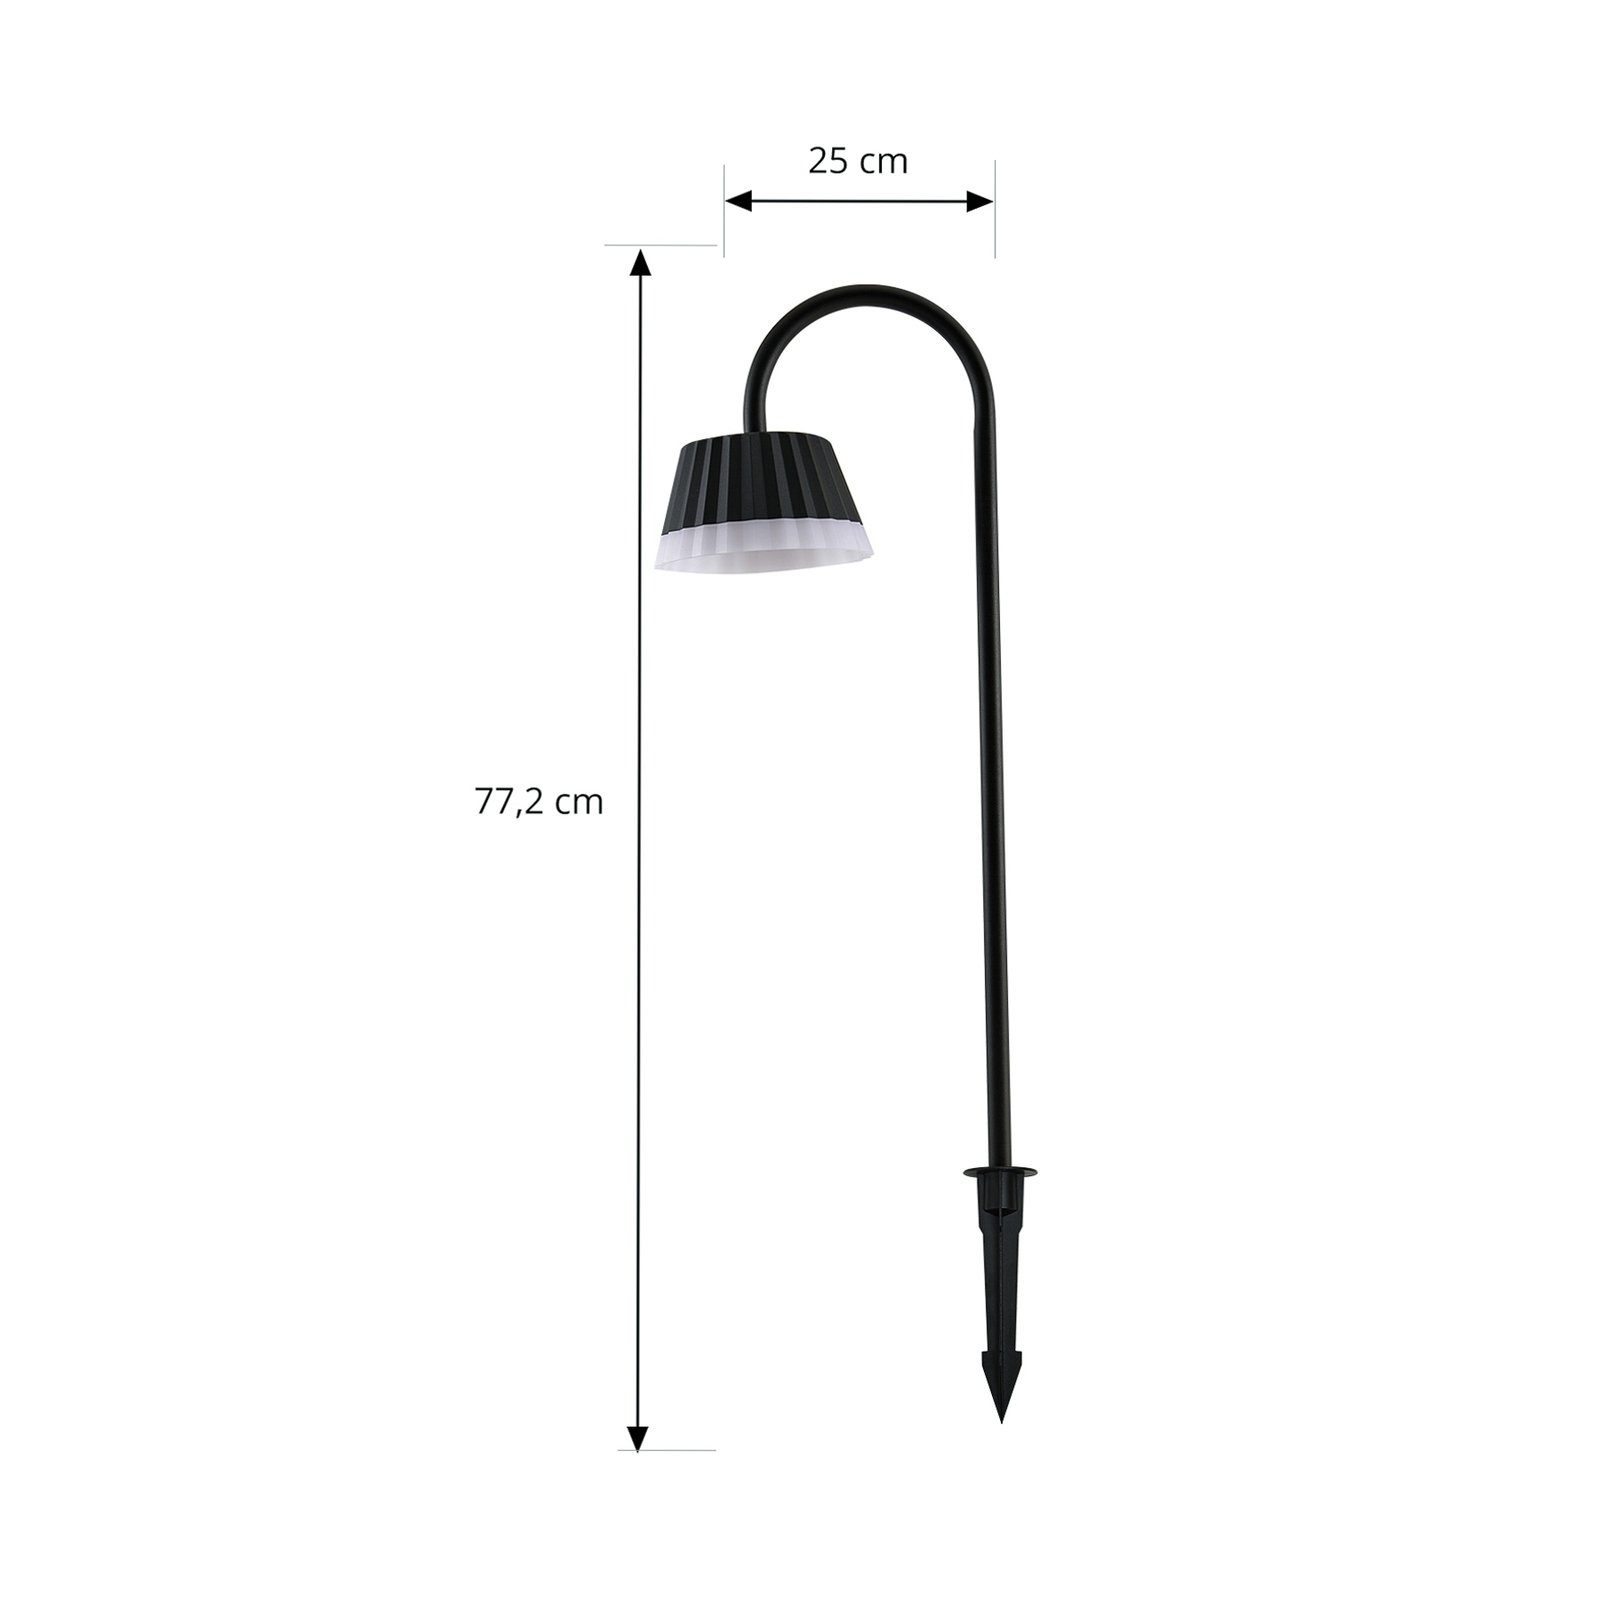 Lindby LED markspiklampa Ameline, mörkgrå, IP65, 77 cm